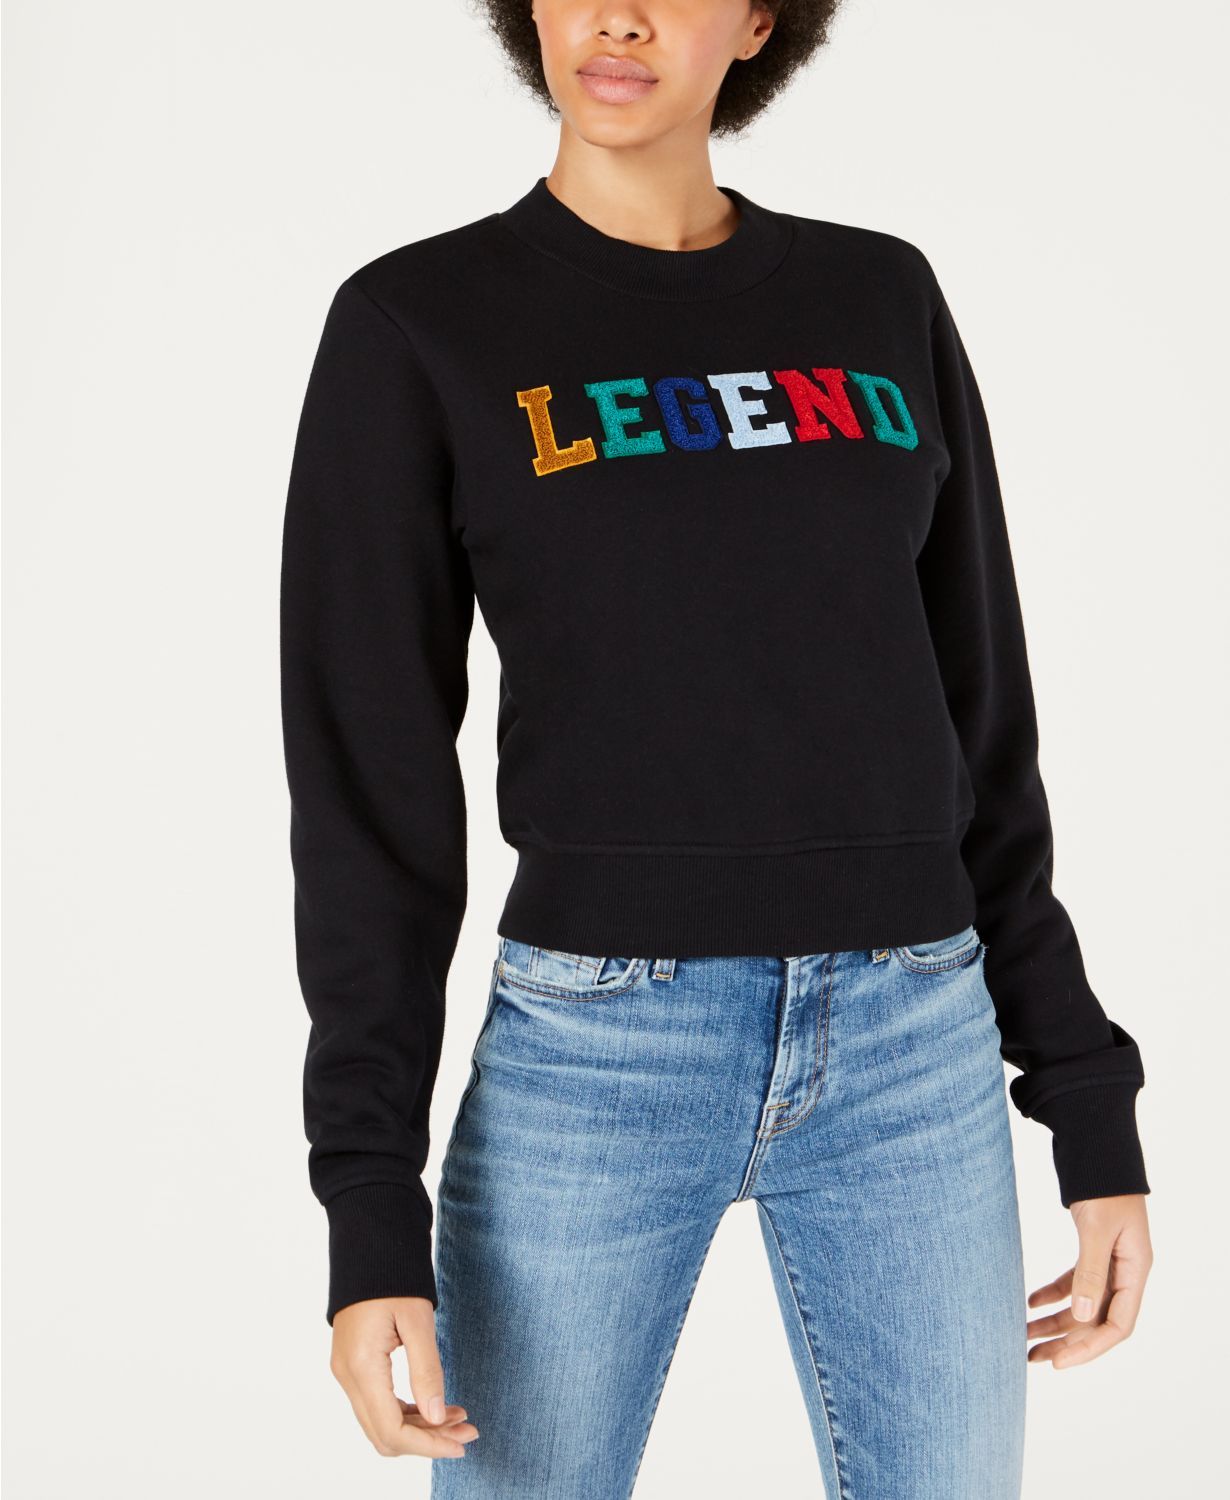 Legend Graphic Sweatshirt